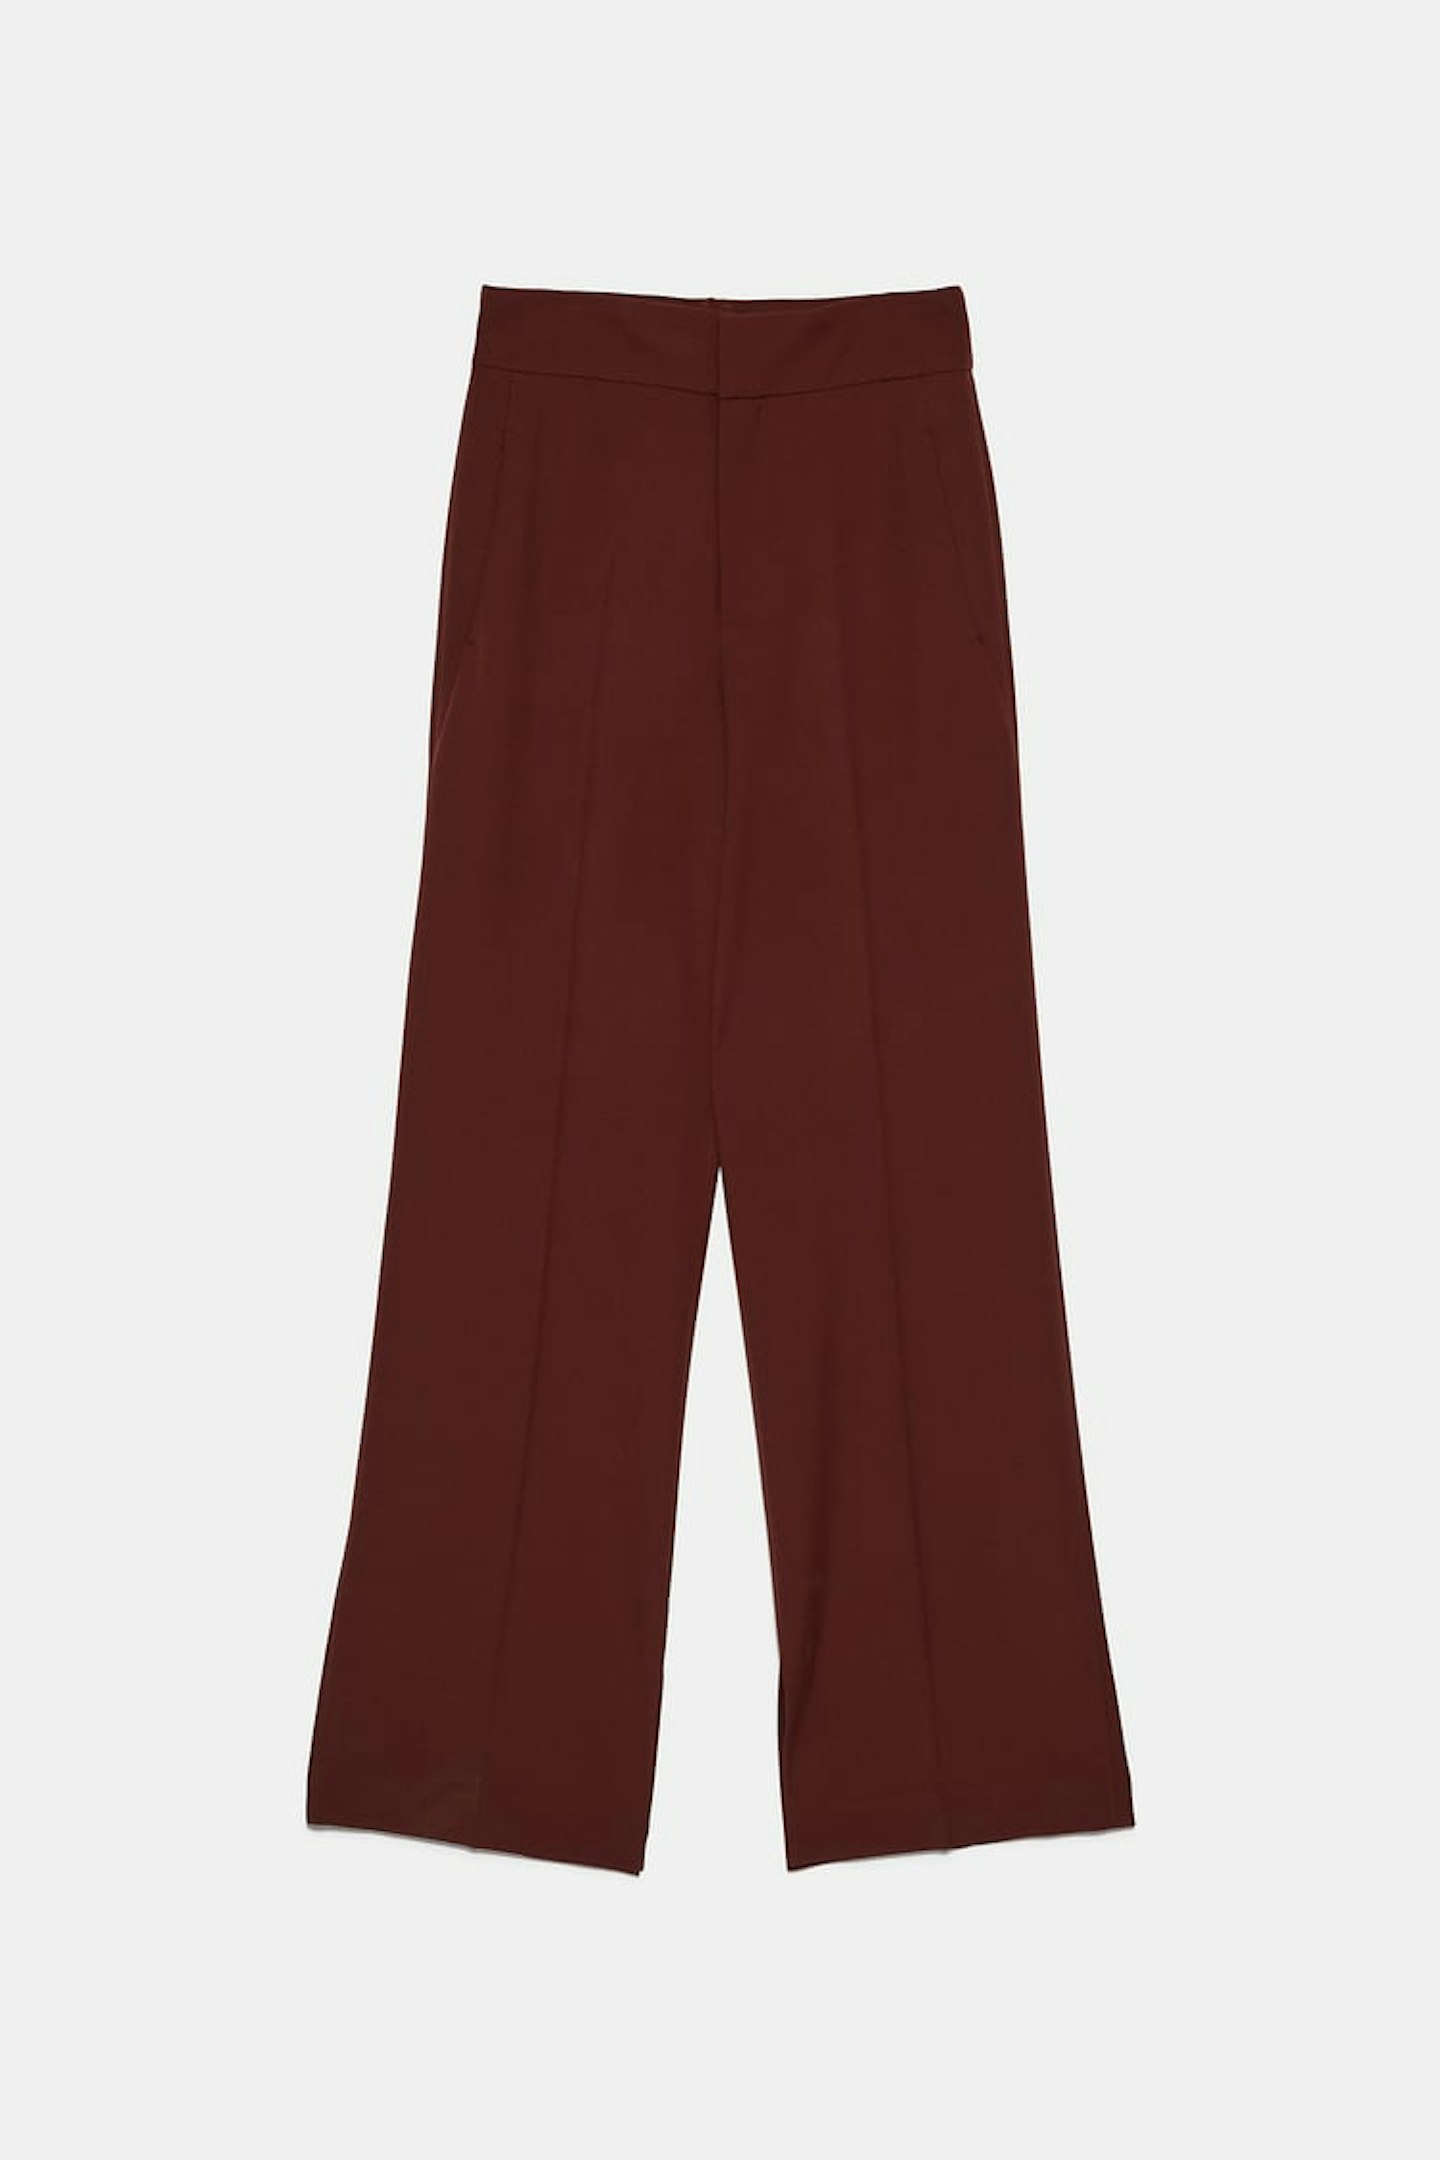 Zara, Side Vent Trousers, £49.99